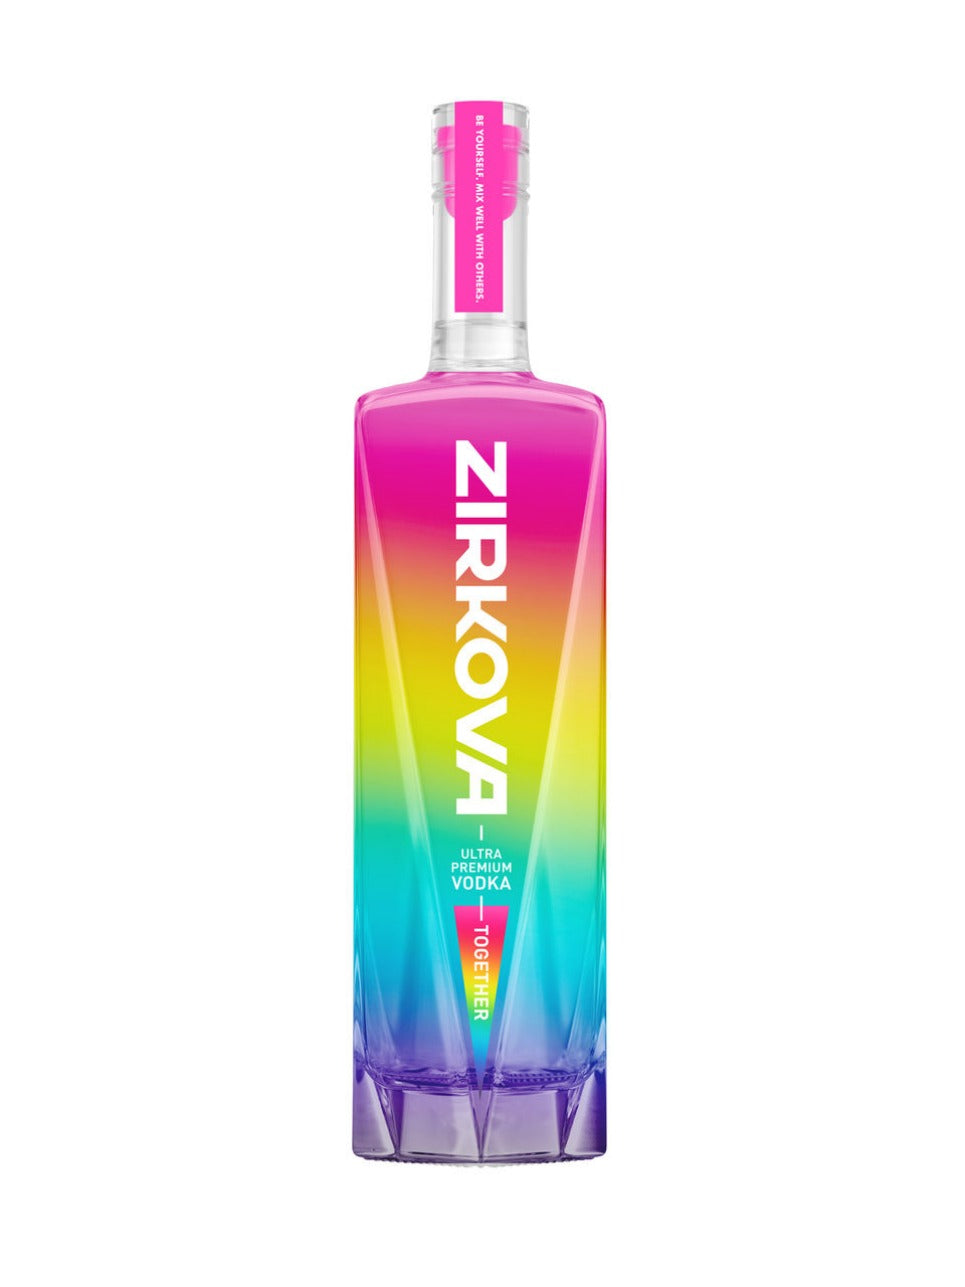 Zirkova Together Limited Edition 1.14L  1140 ml bottle